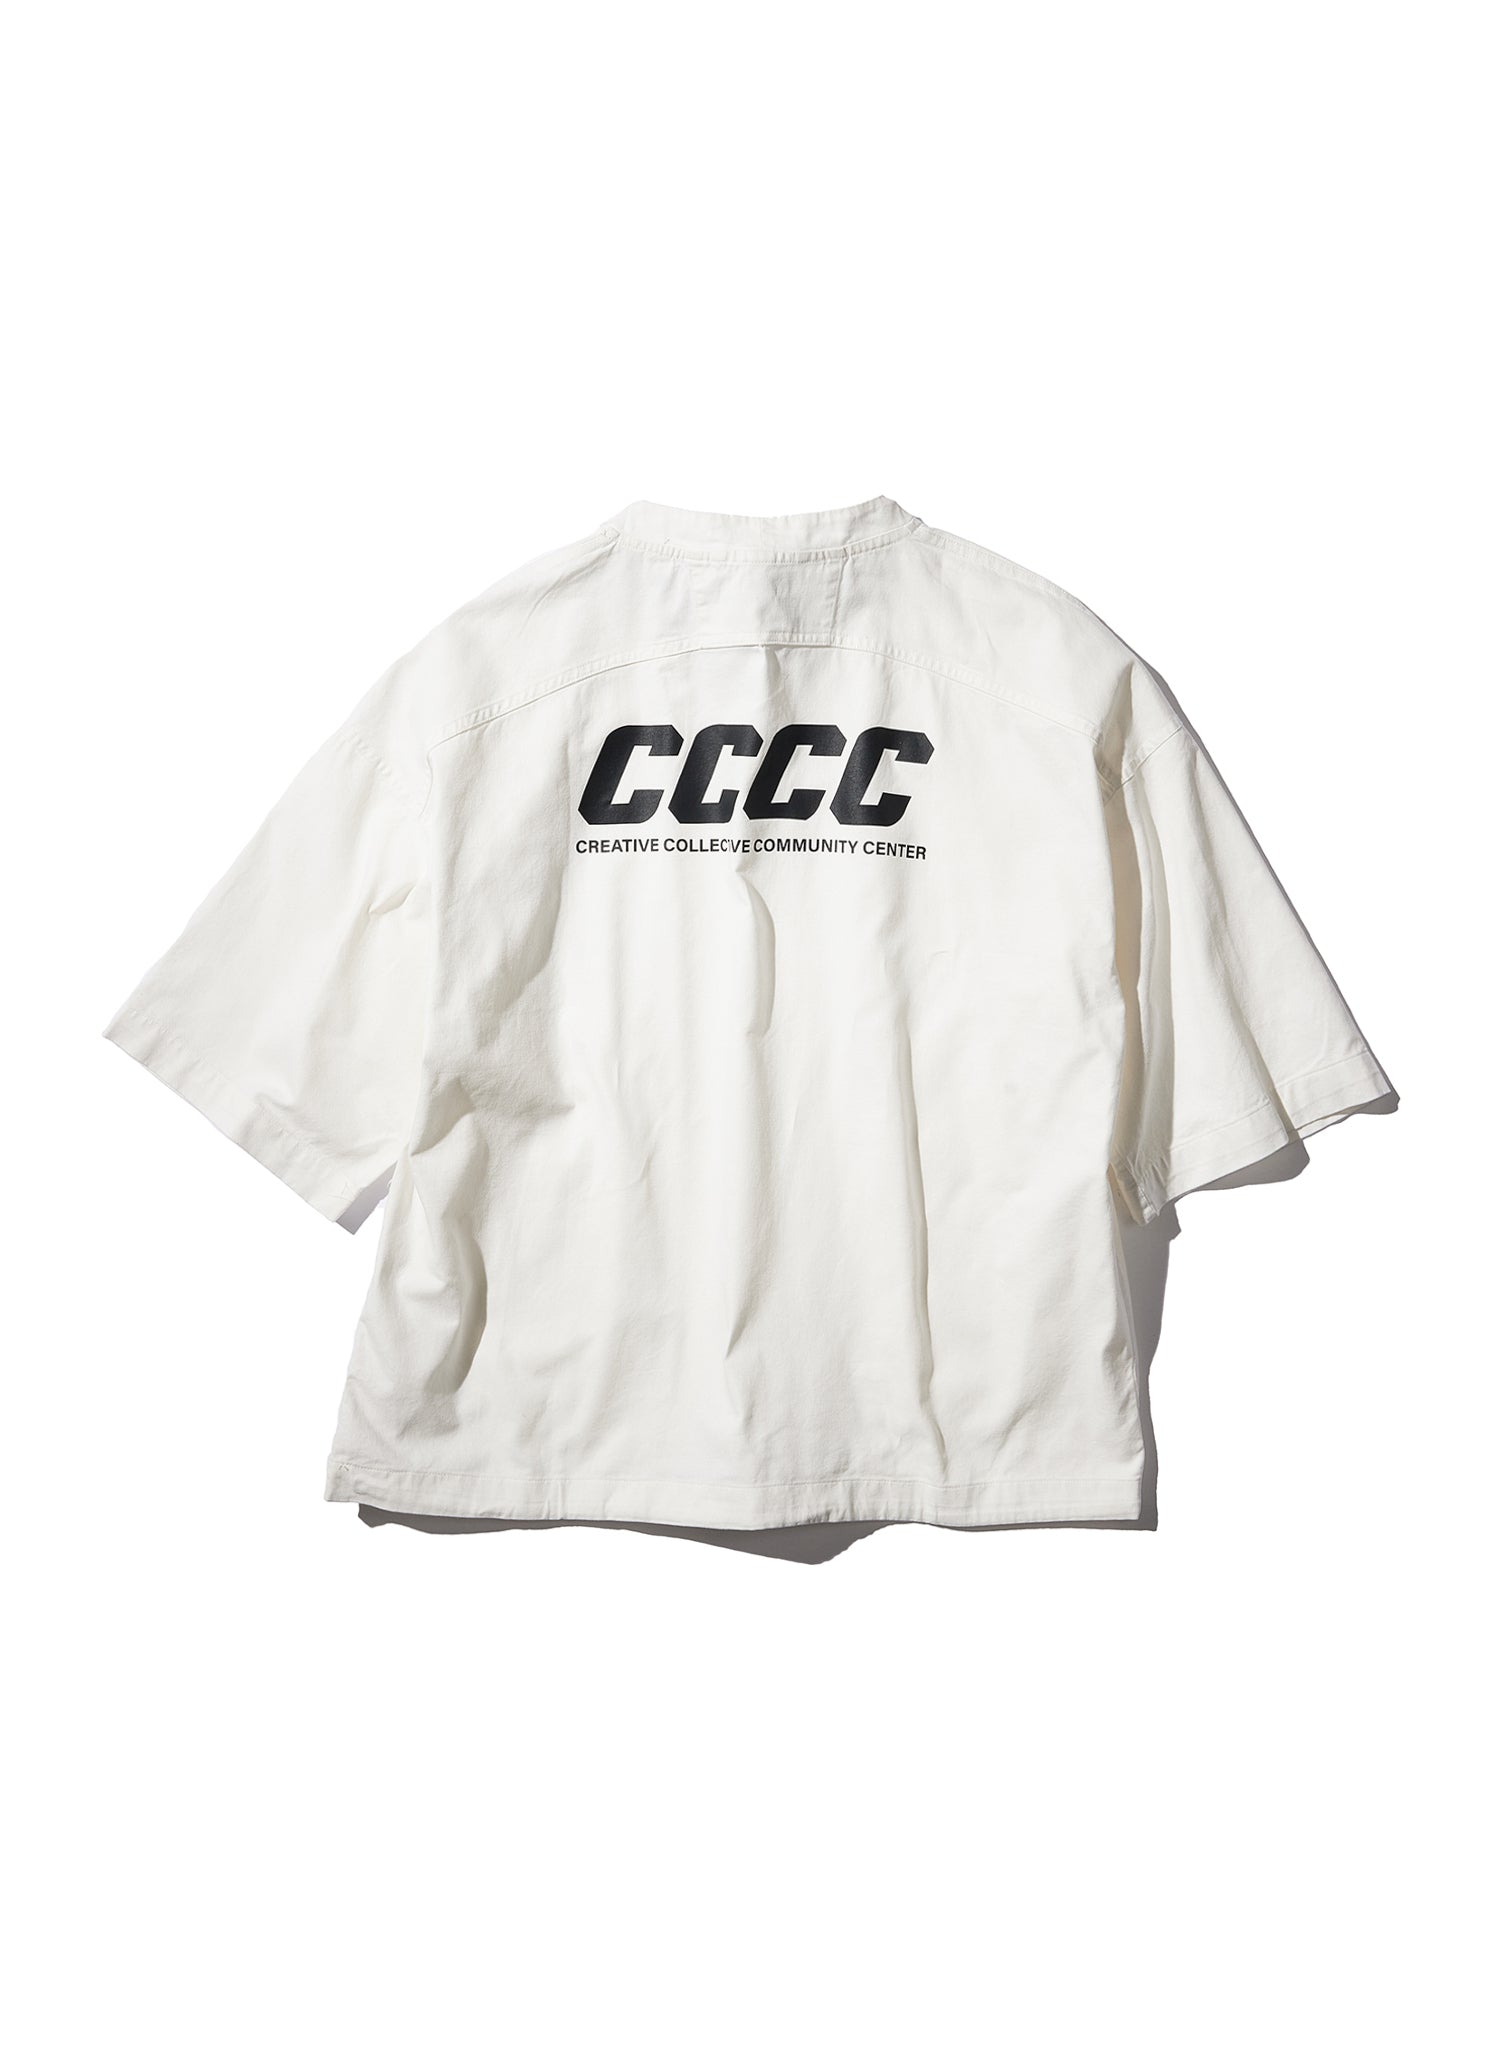 WO Prison T-shirt White size M - トップス